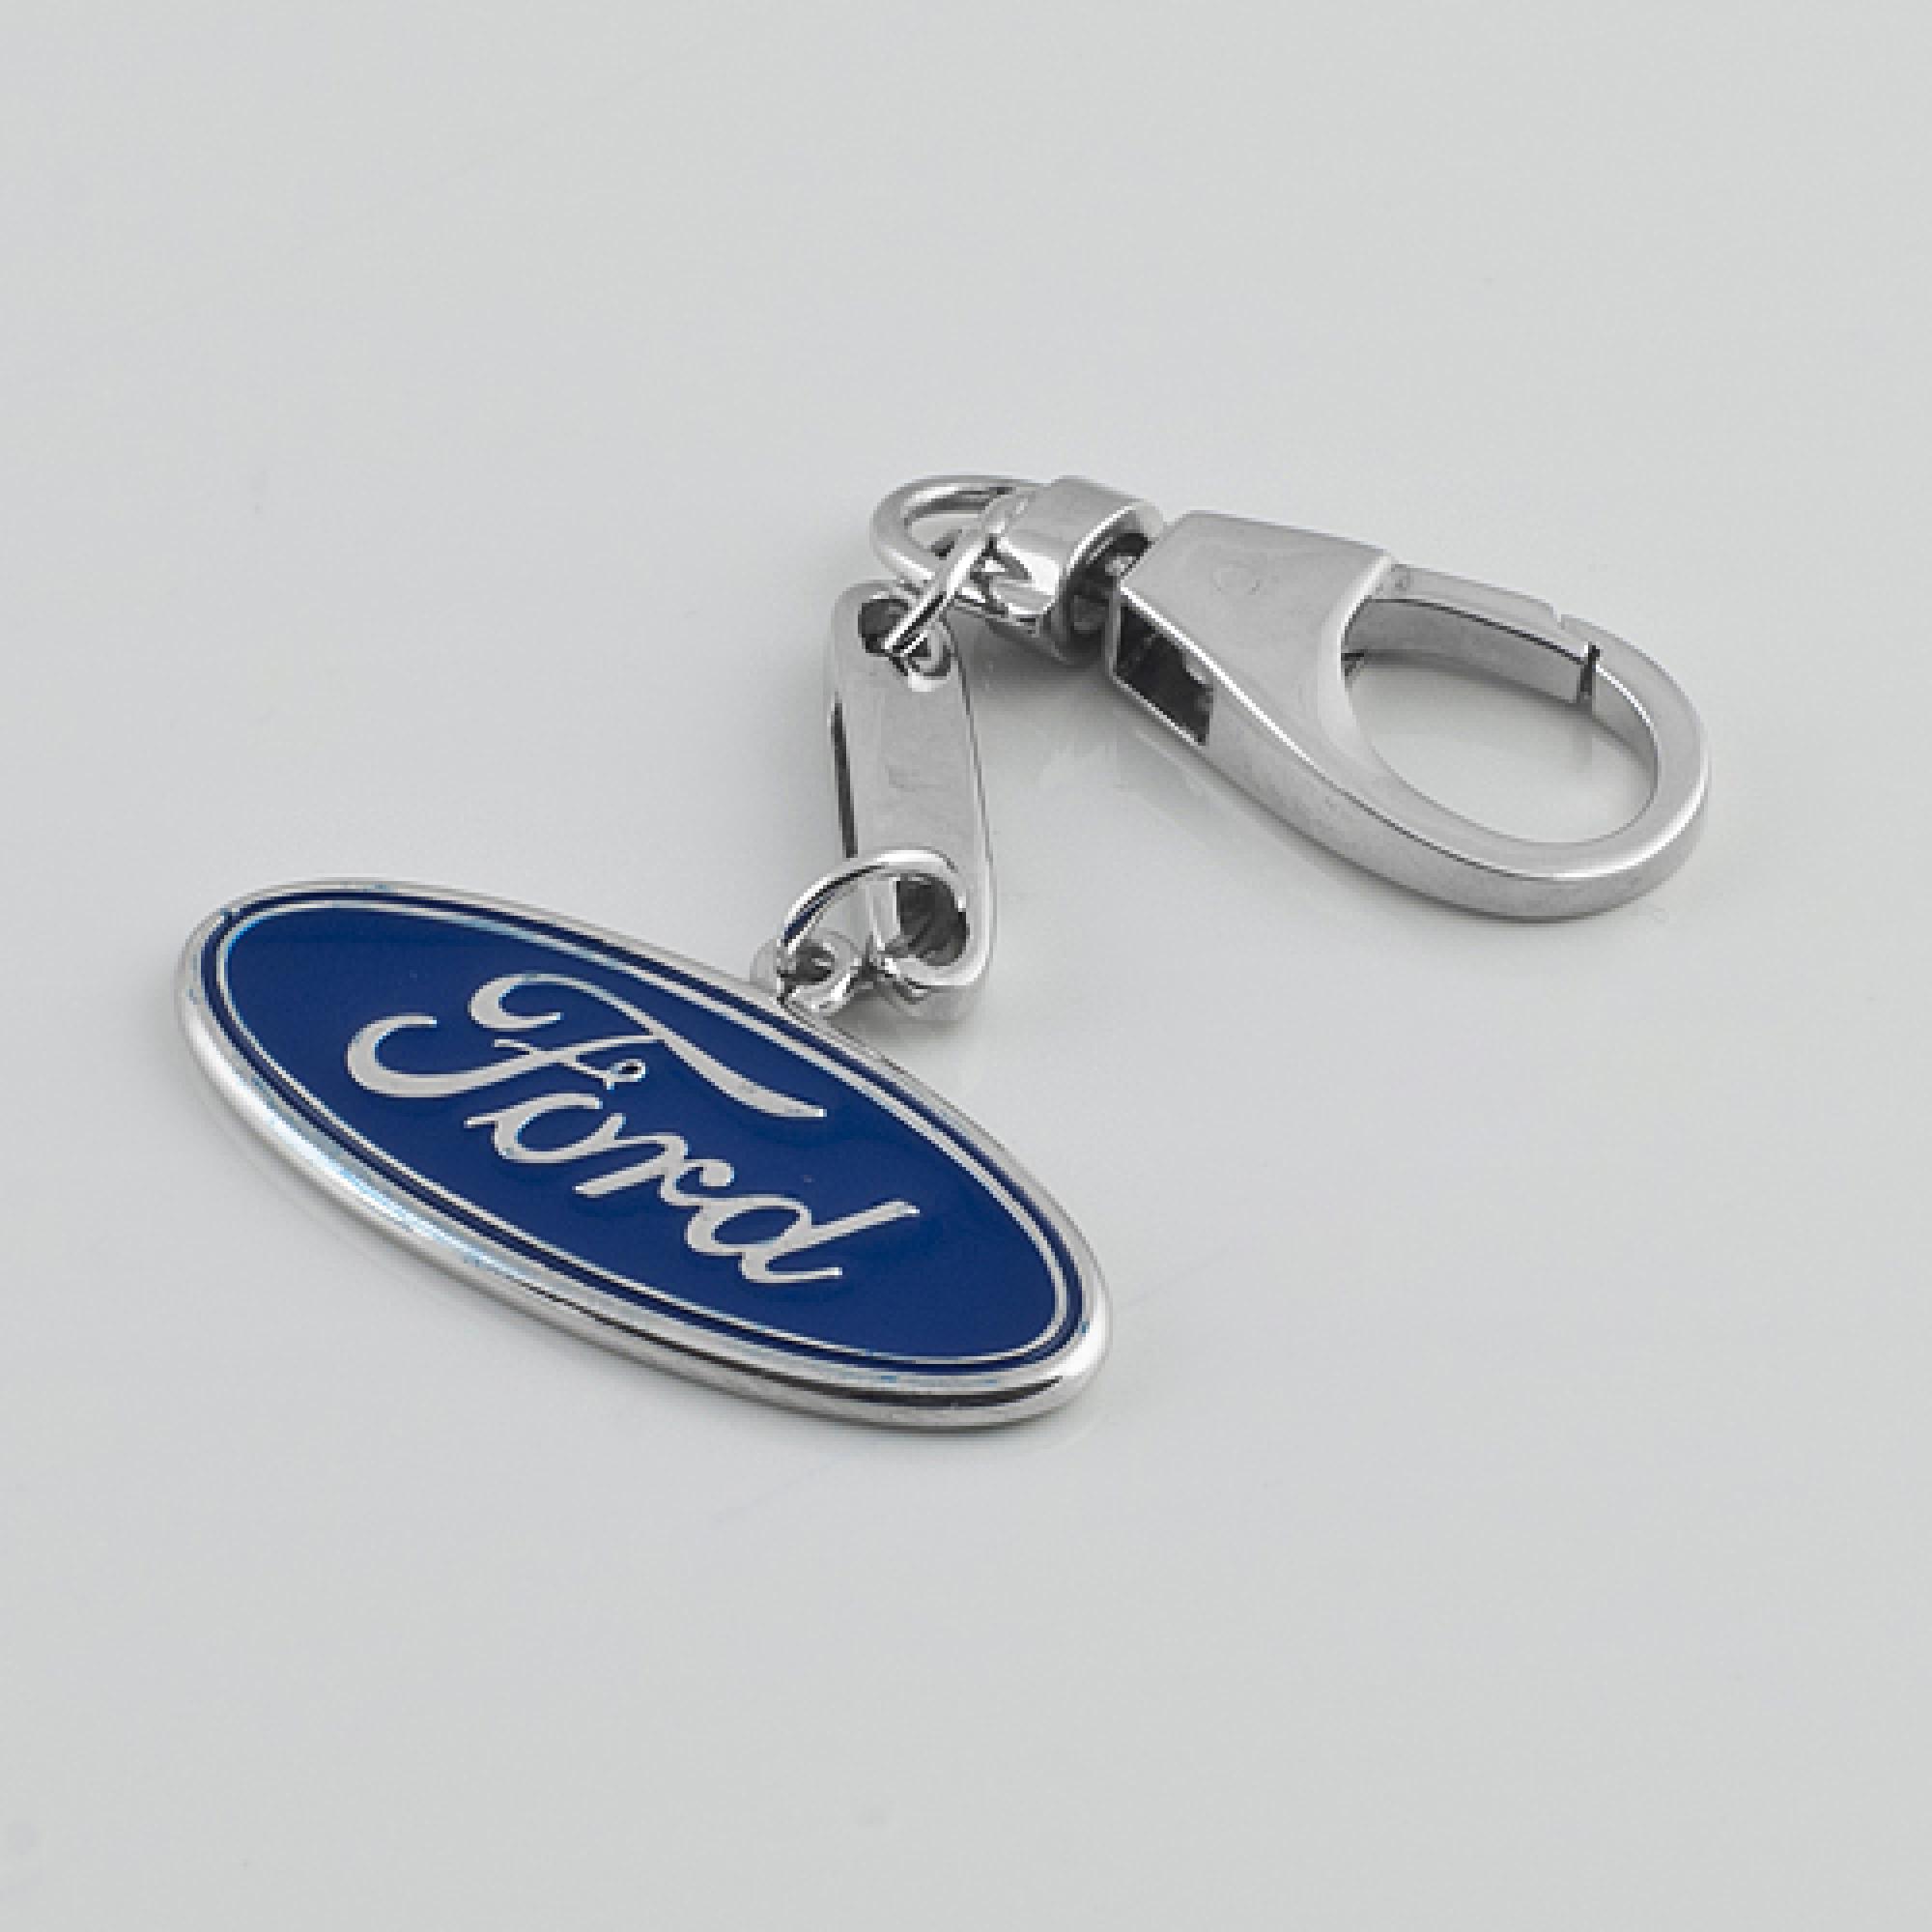 Срібний брелок Ford (Форд) (9016)